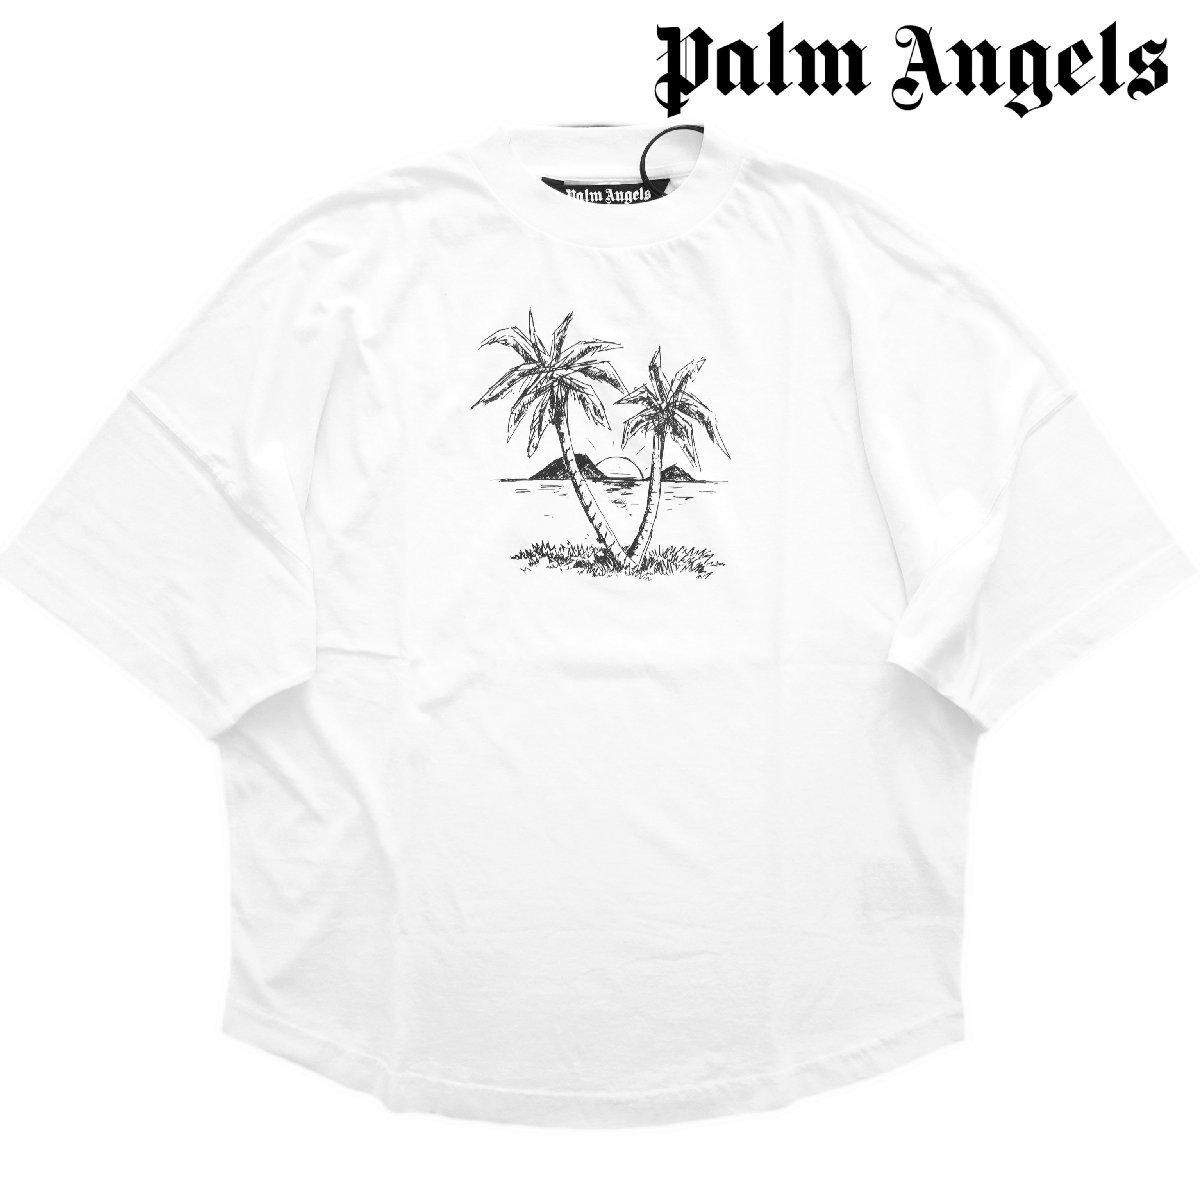 2022◆新品◆パームエンジェルス◆ラグジュアリーストリート! Palm Angels 背中デカロゴ パームツリー オーバーサイズ 半袖 Tシャツ S 白の画像1